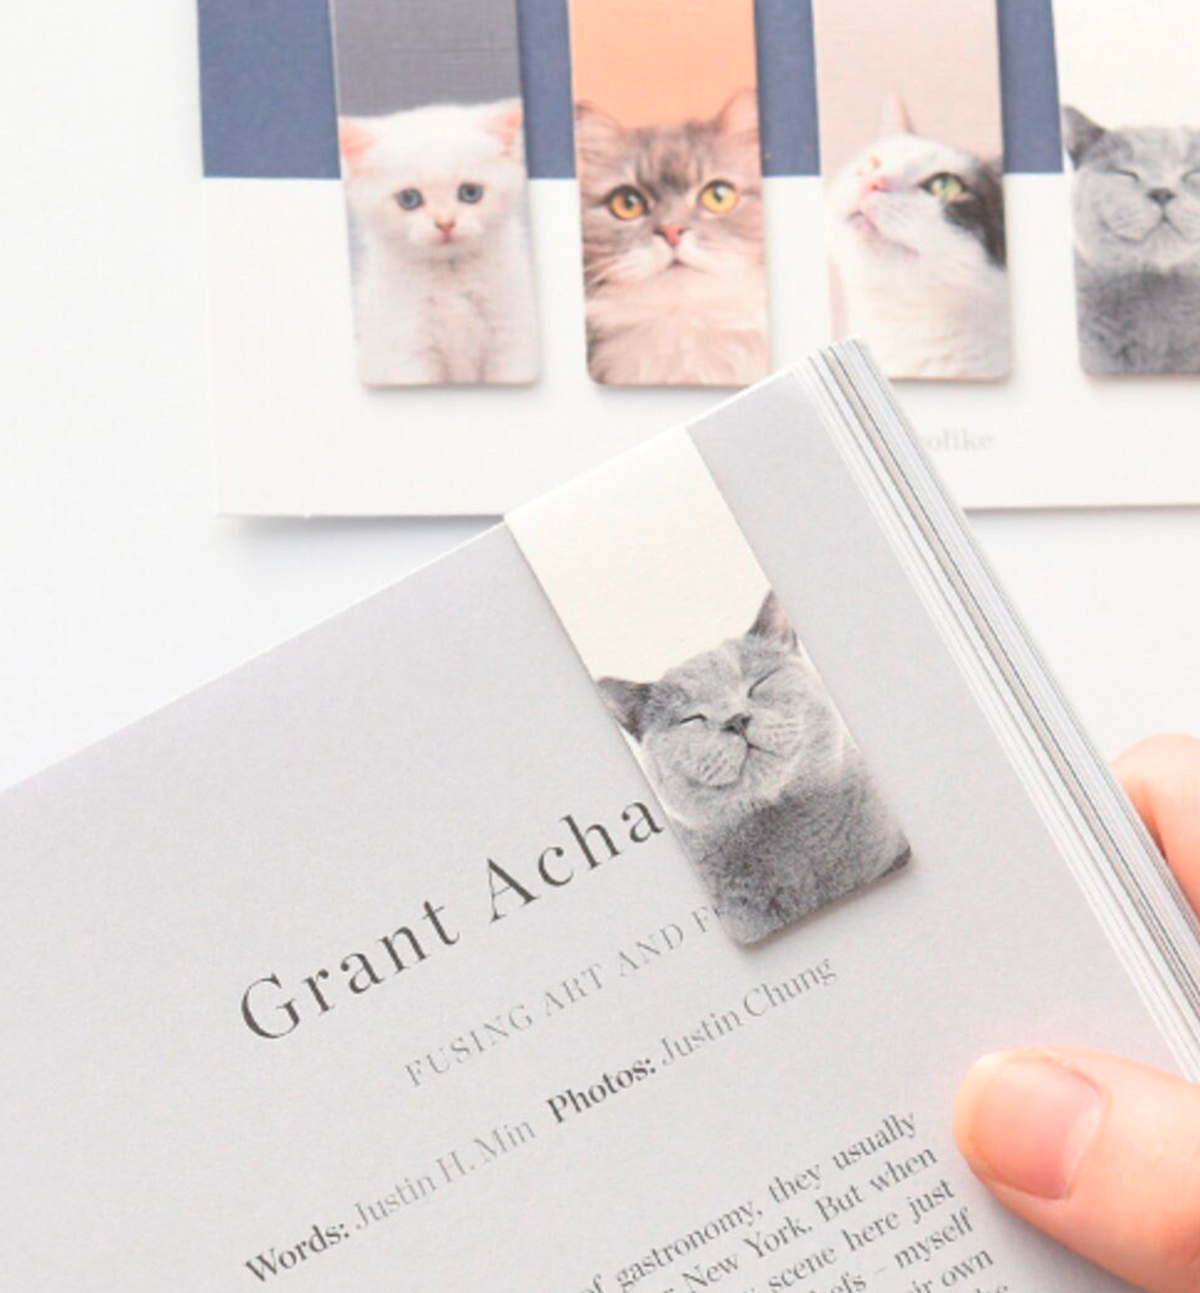 5 My Pet Cat Magnetic Bookmark